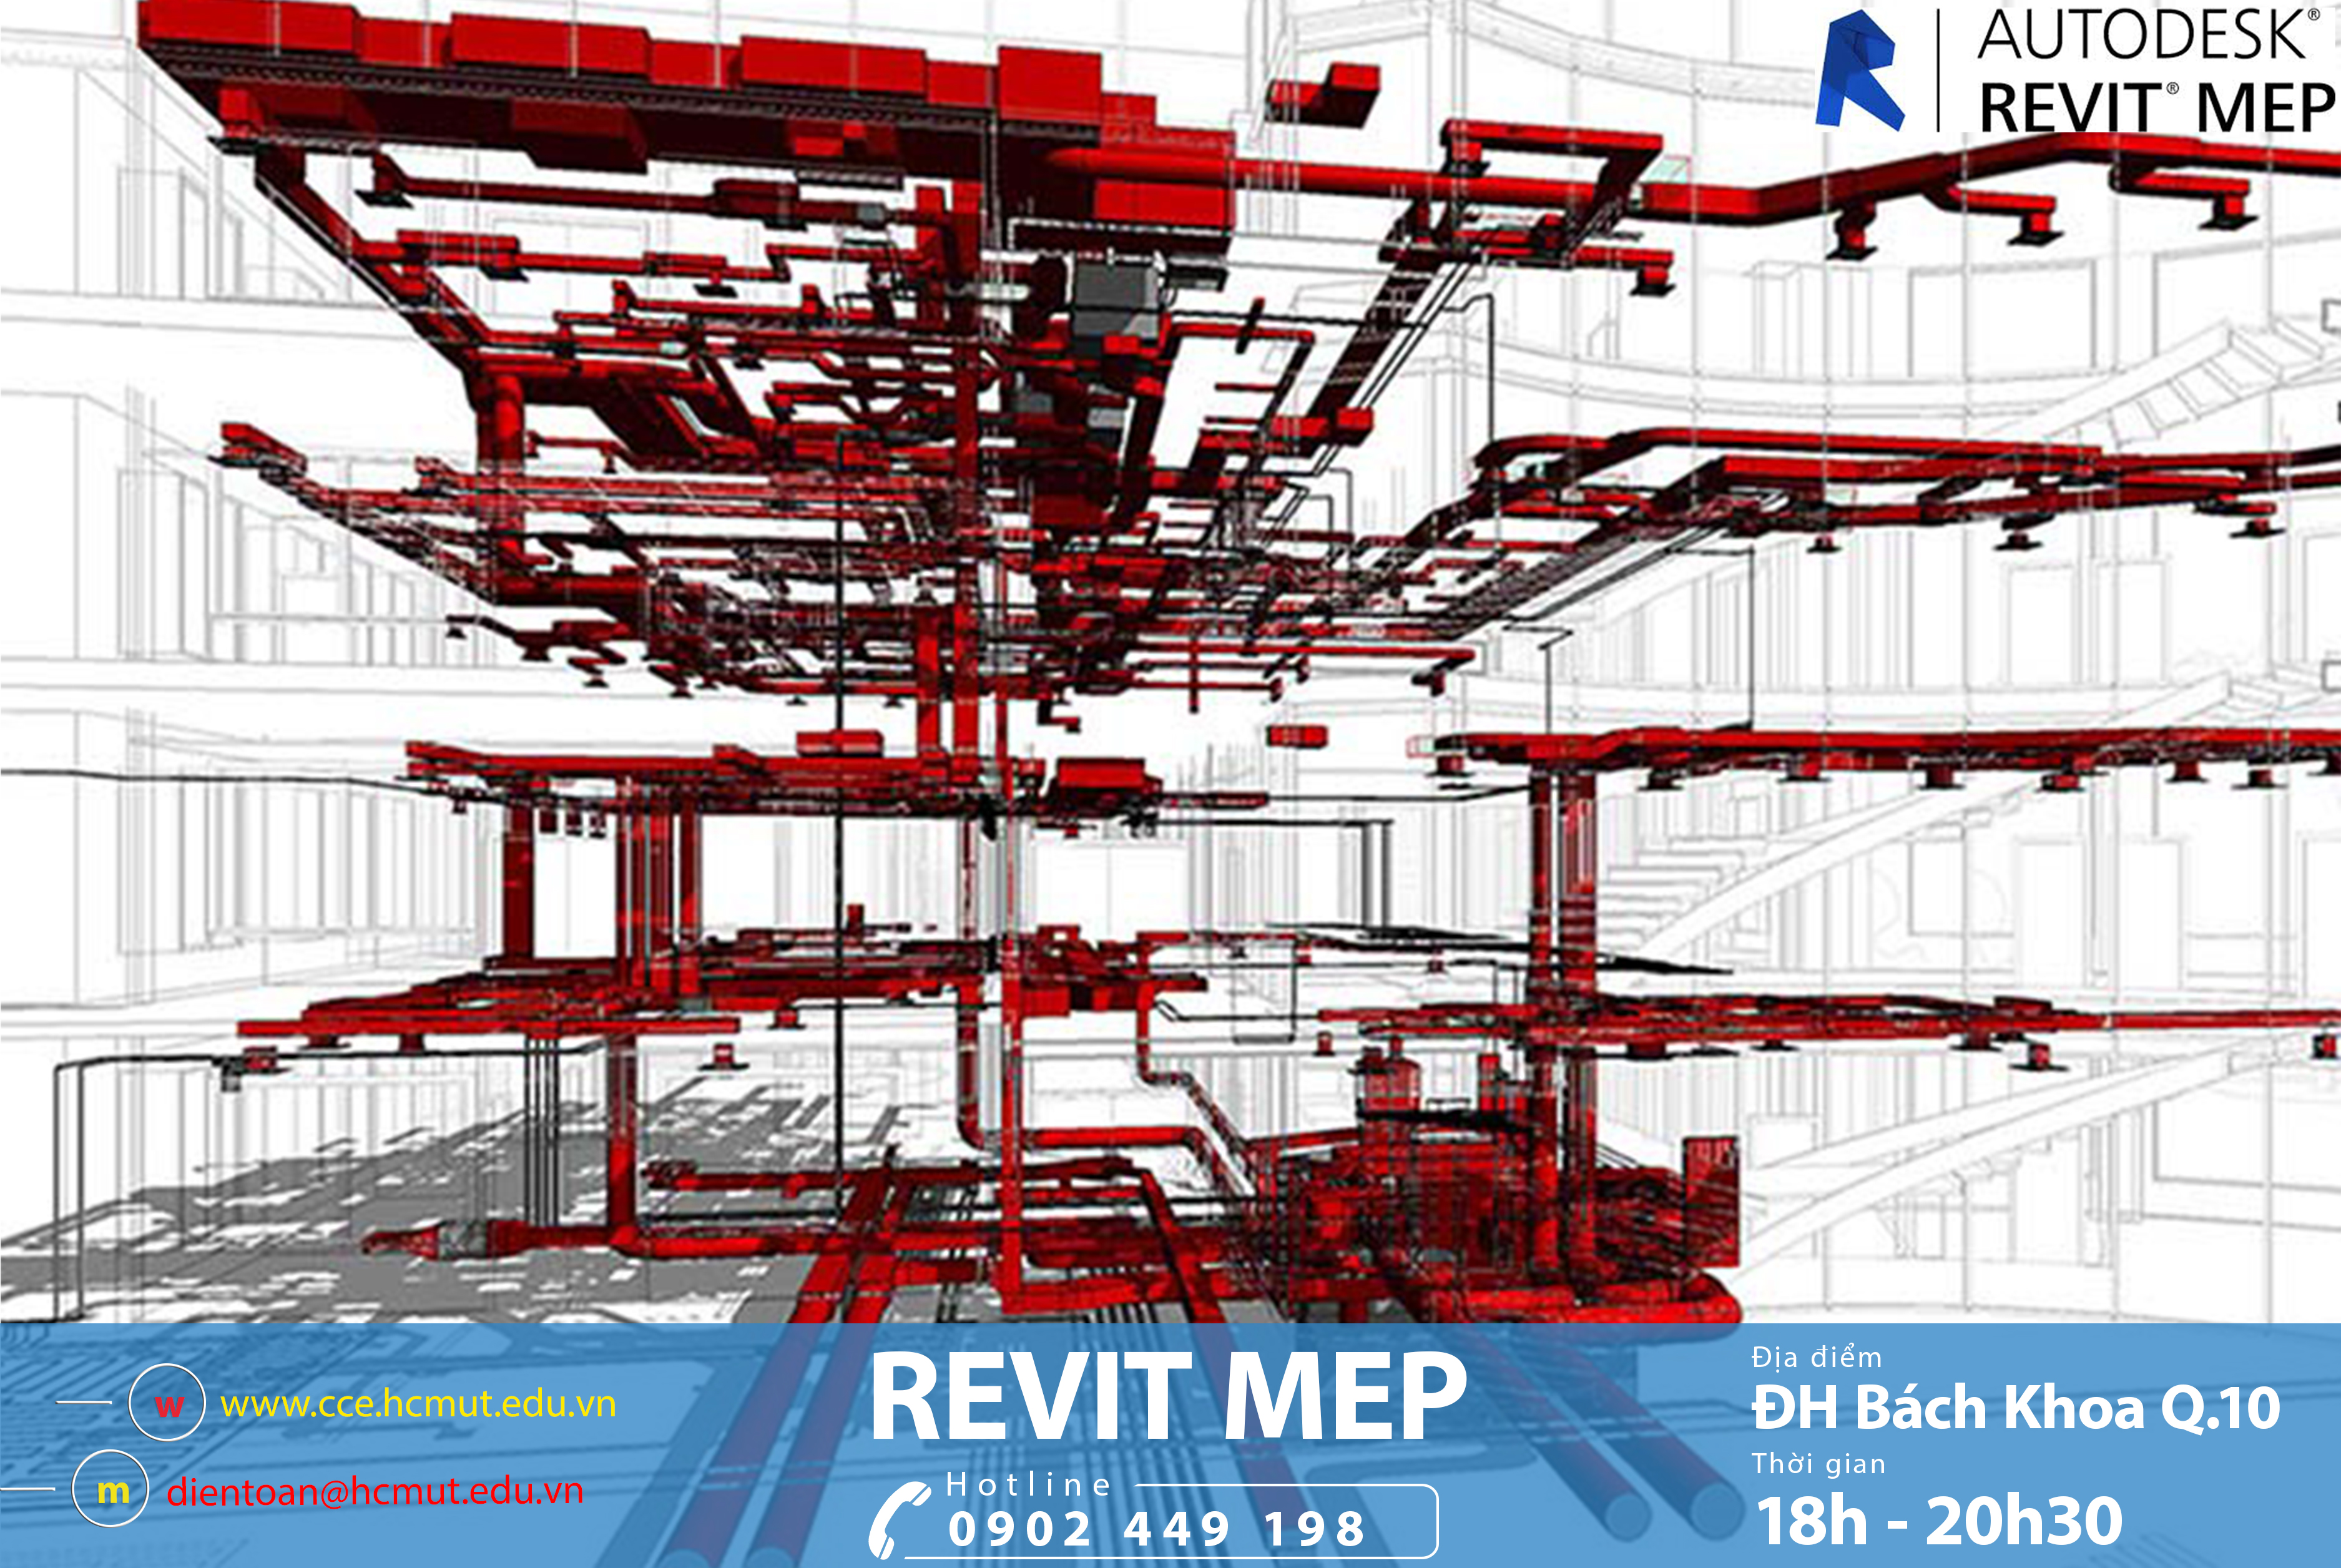 Các tính năng mới nhất của Revit MEP là gì?
